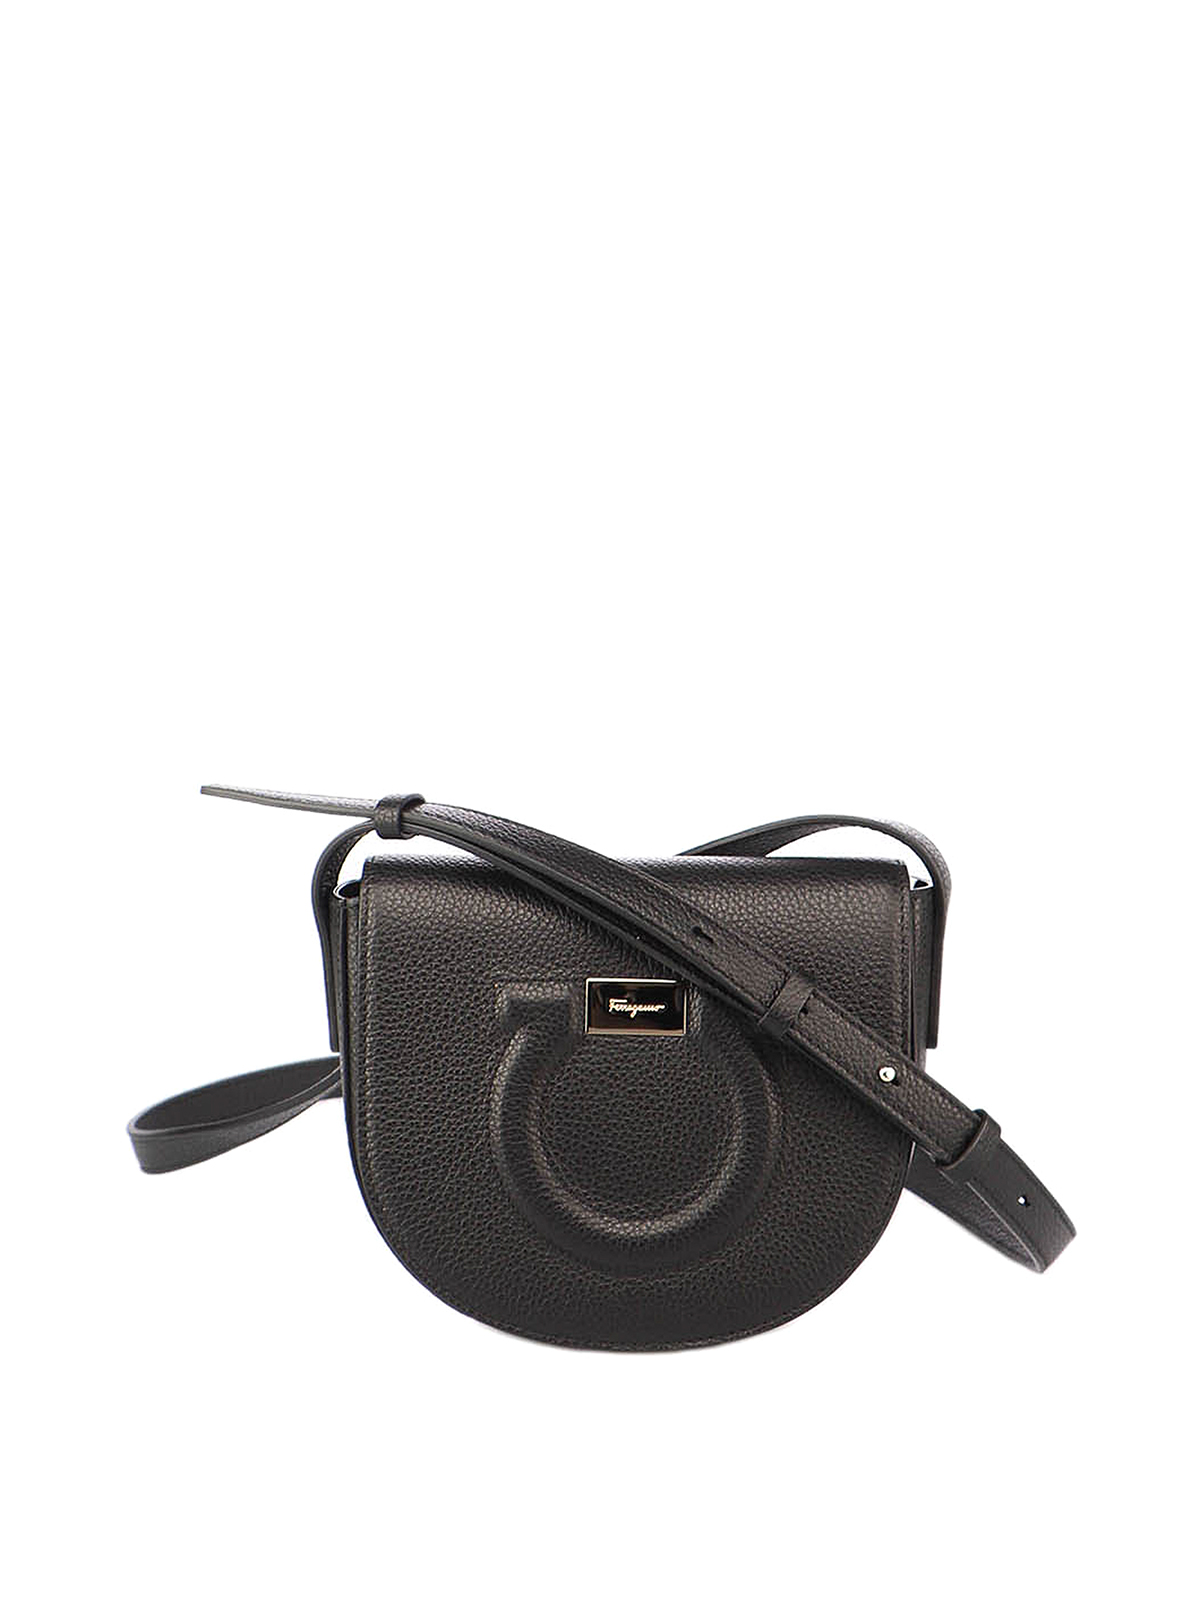 Ferragamo Black Leather Gancini Crossbody Bag